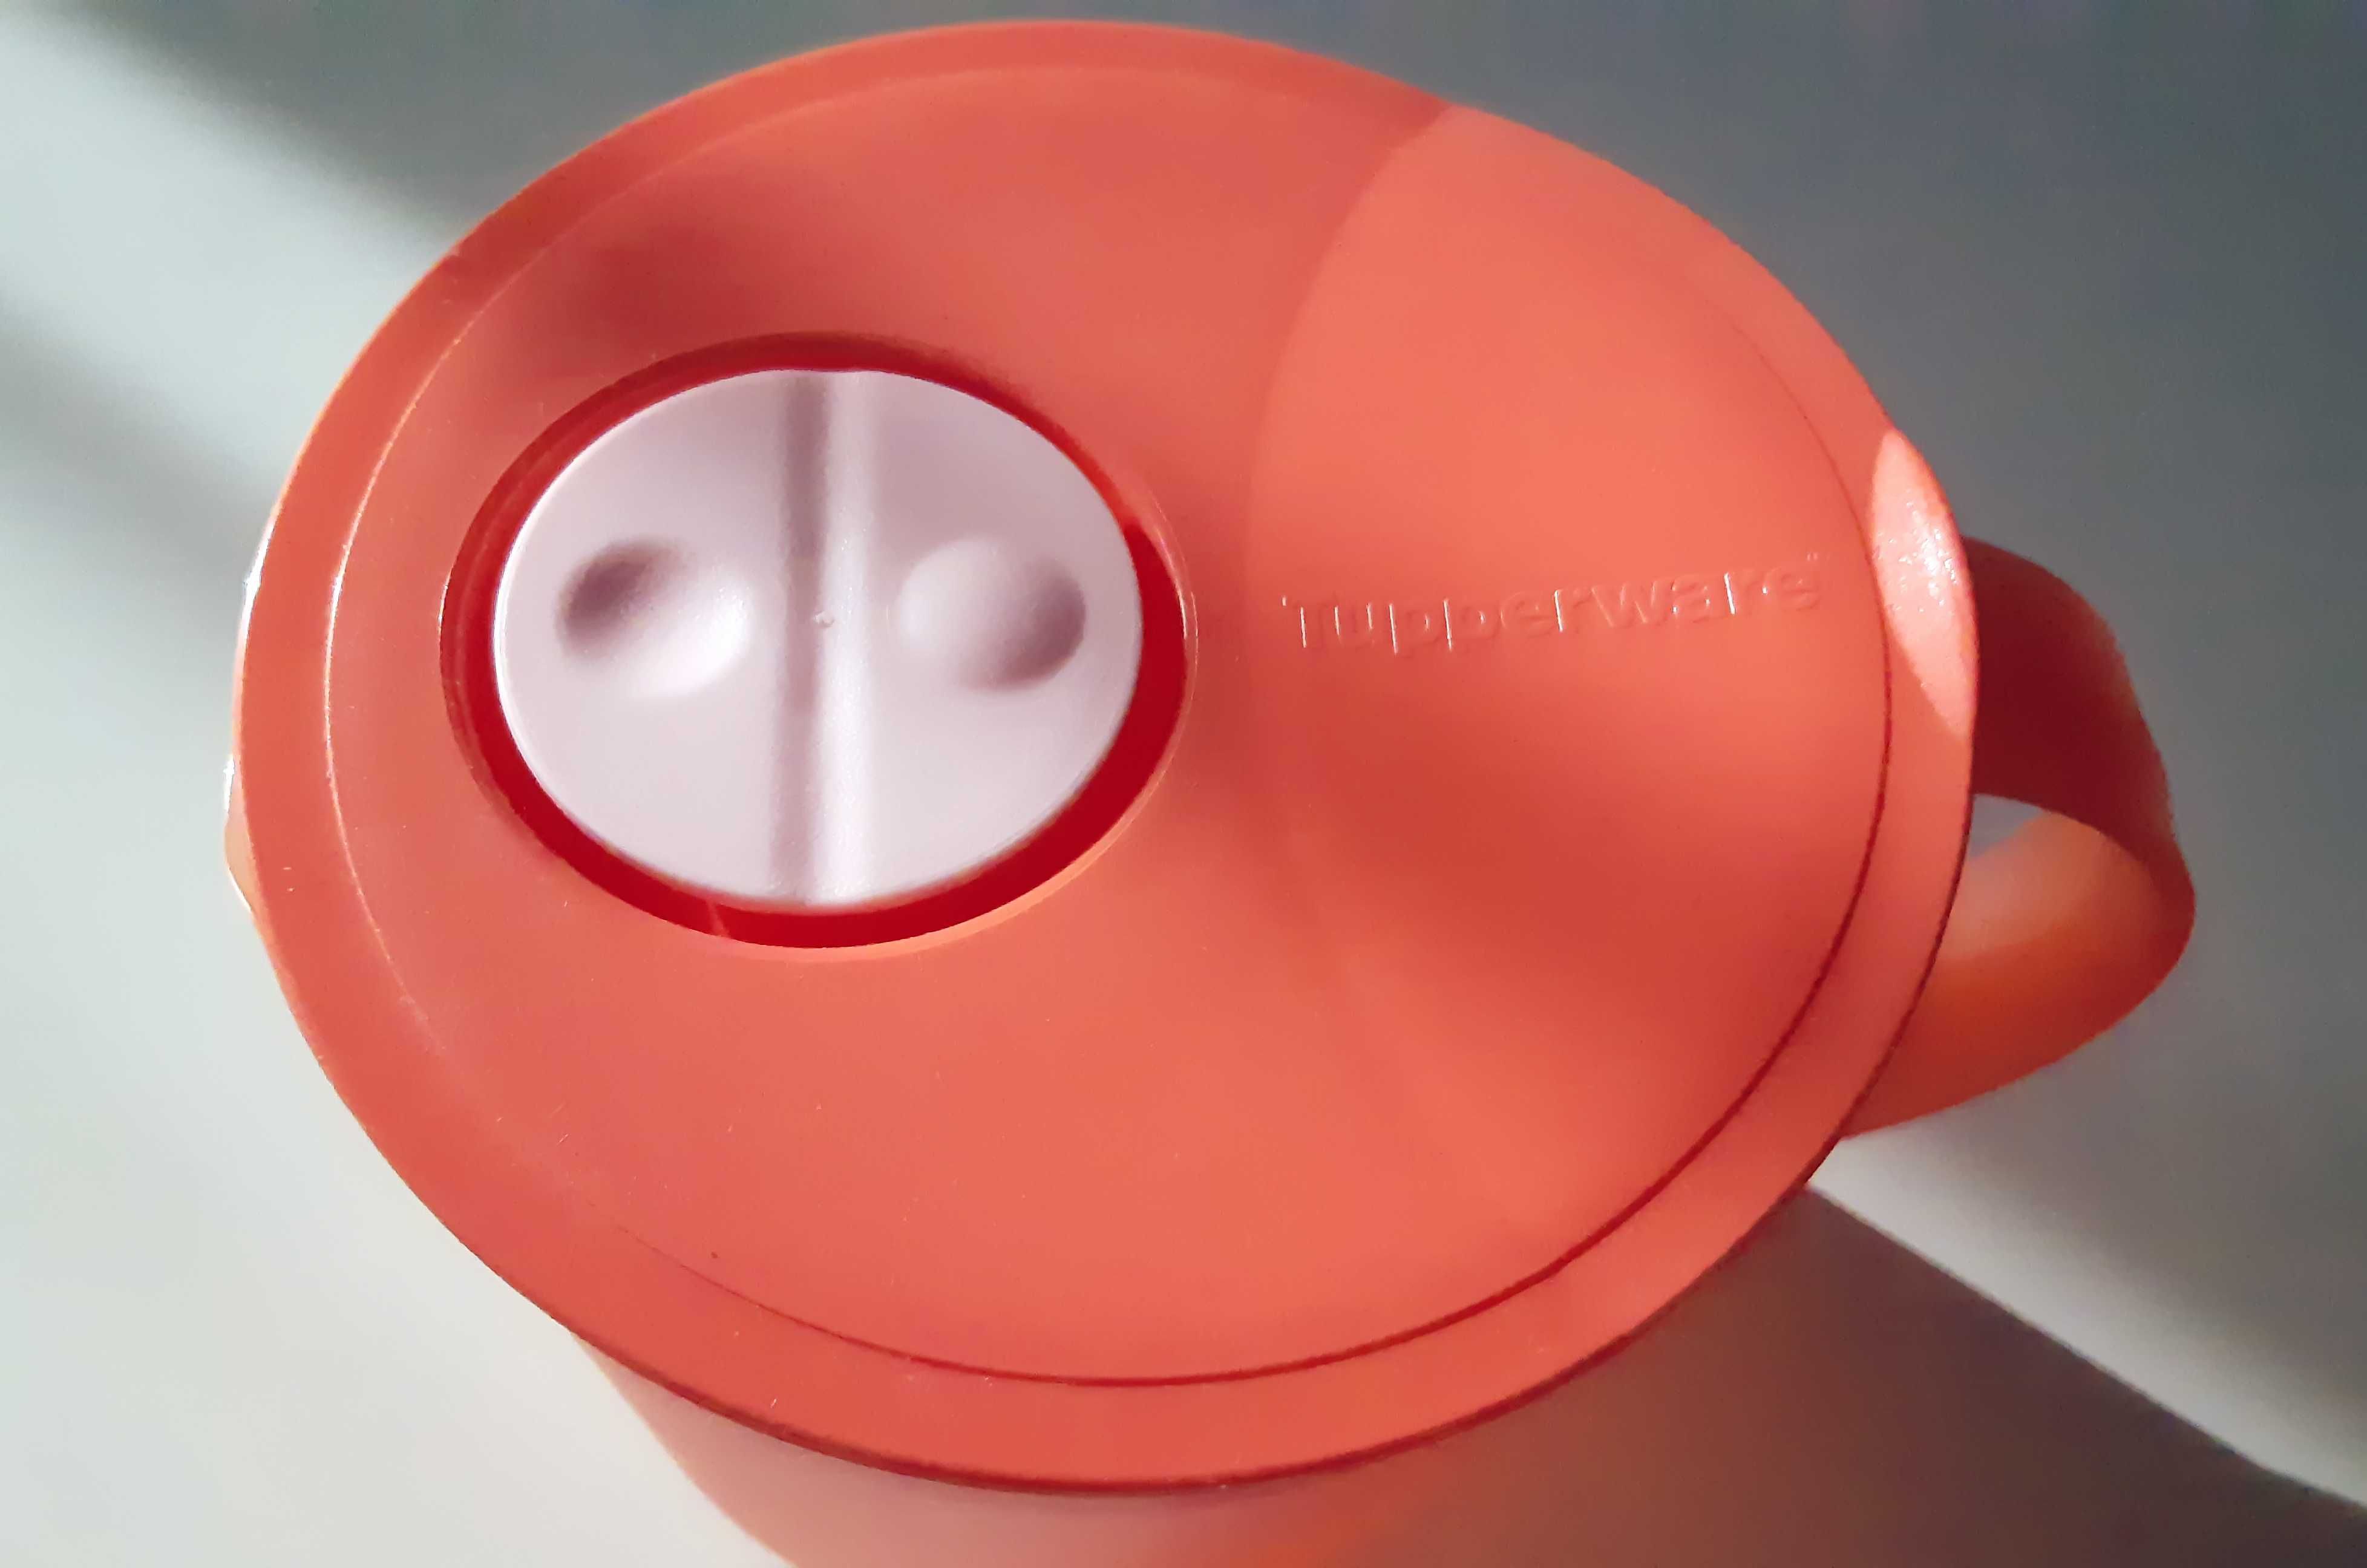 Кувшин новая волна Tupperware для разогрева в микроволновой печи